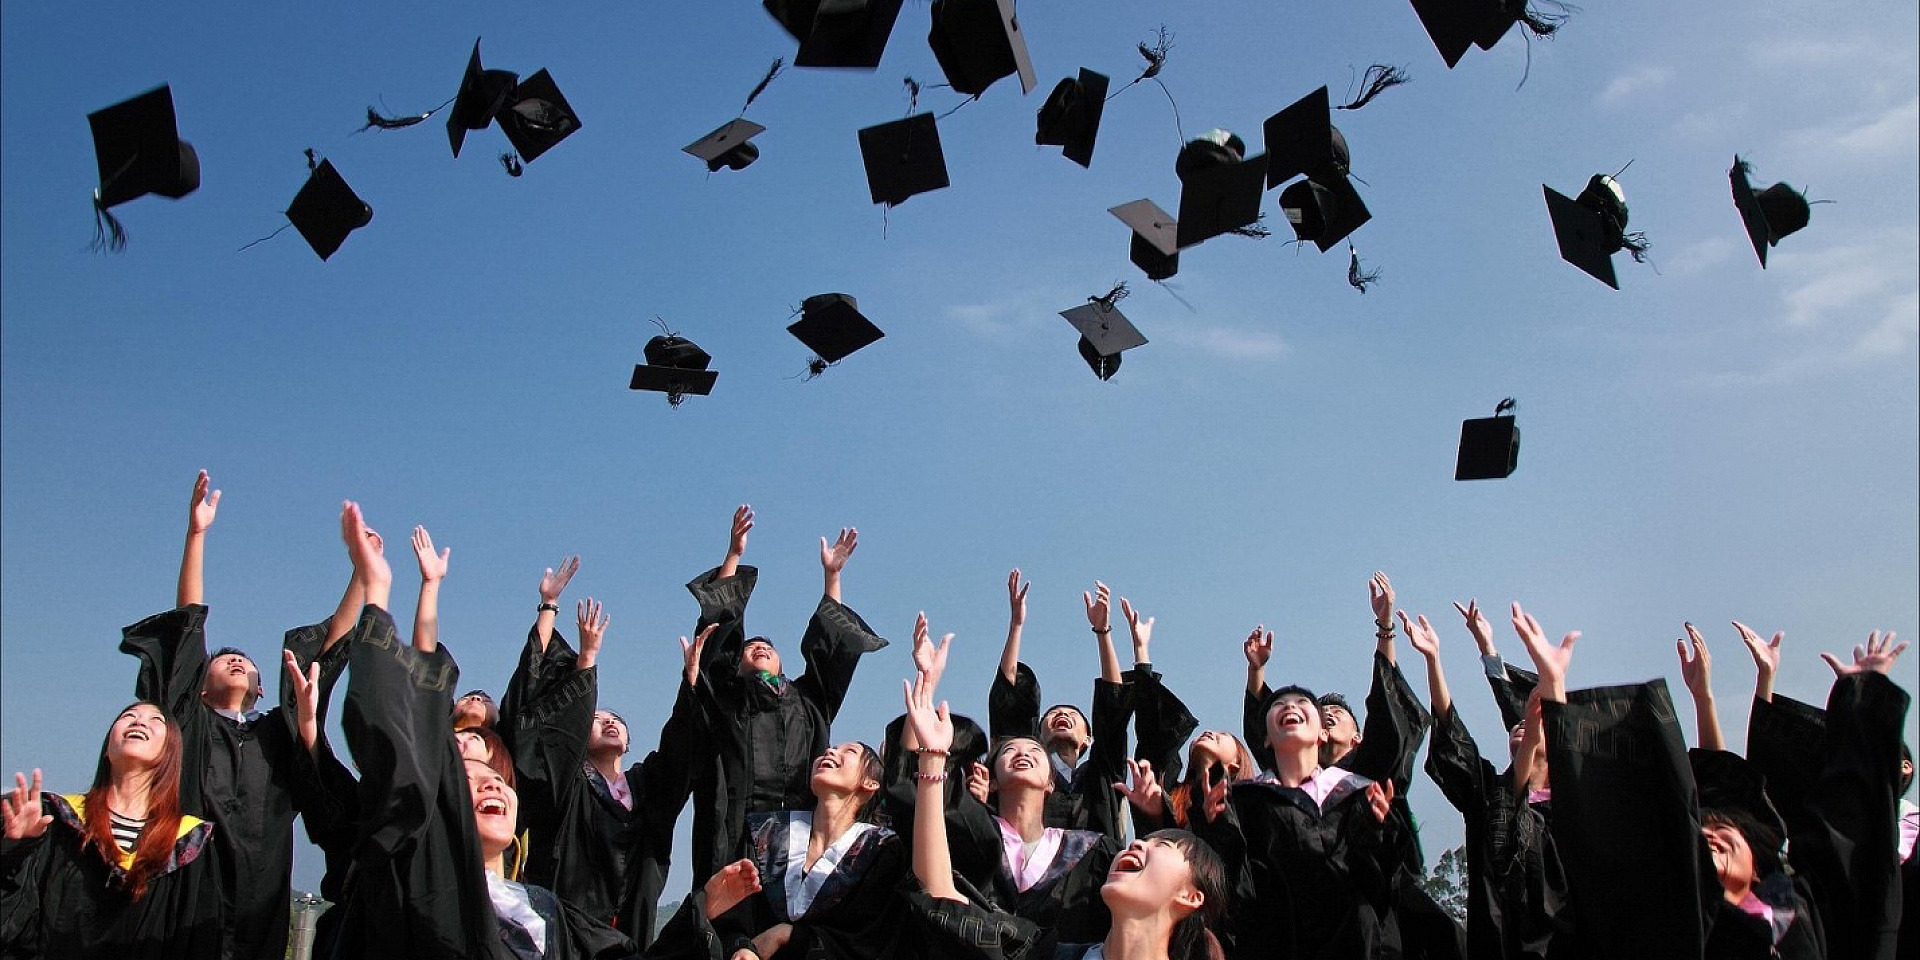 Étudiants lançant leur chapeau de diplômé en l'air par une journée d'été.